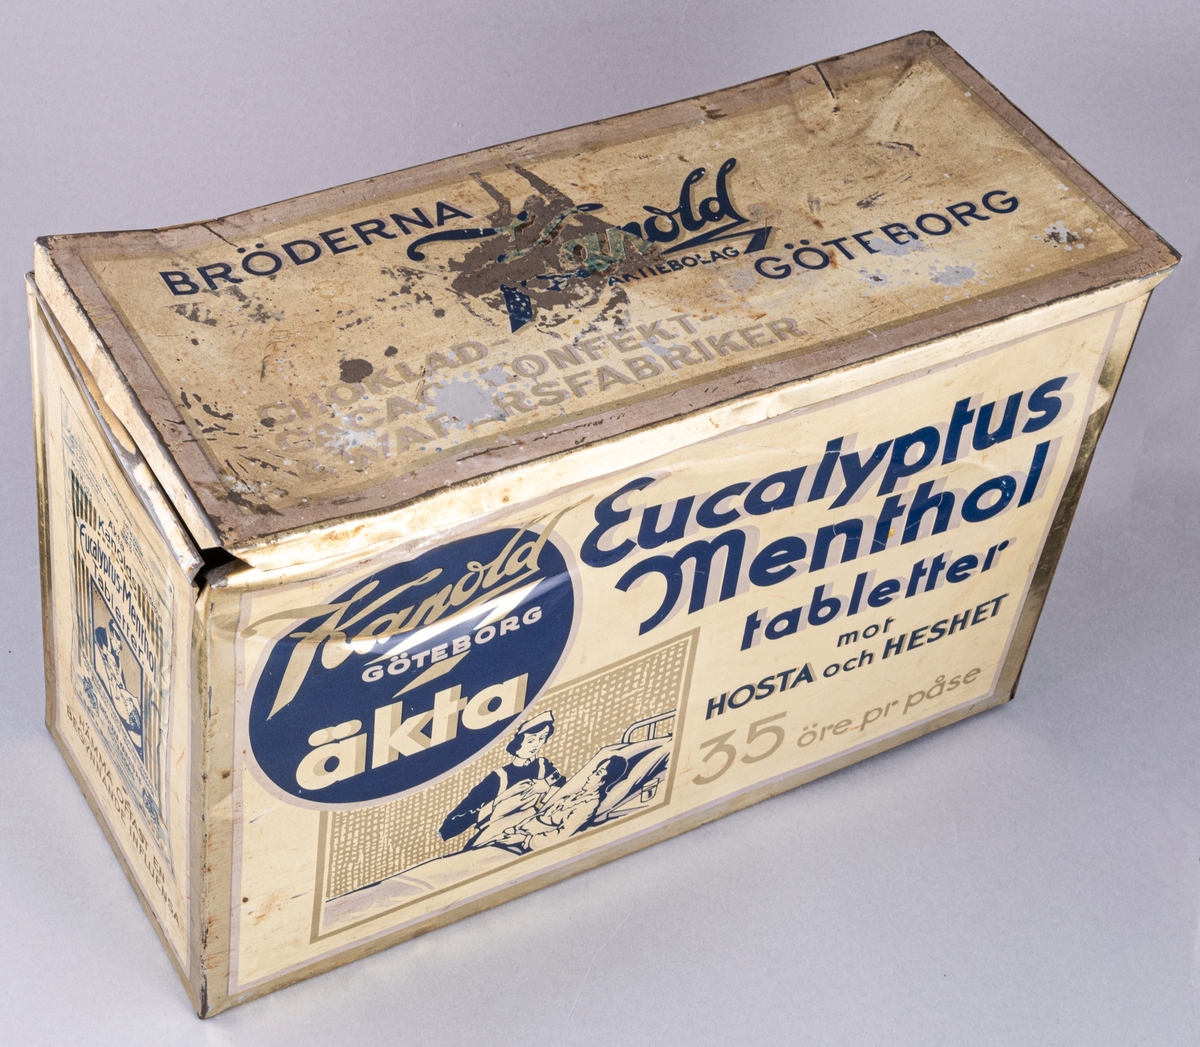 Plåtburk, rektangulär, ljusgul med blå text och mönster. Text på burken: Kandold GÖTEBORG äkta Eucalyptus Menthol tabletter mot HOSTA och HESHET.